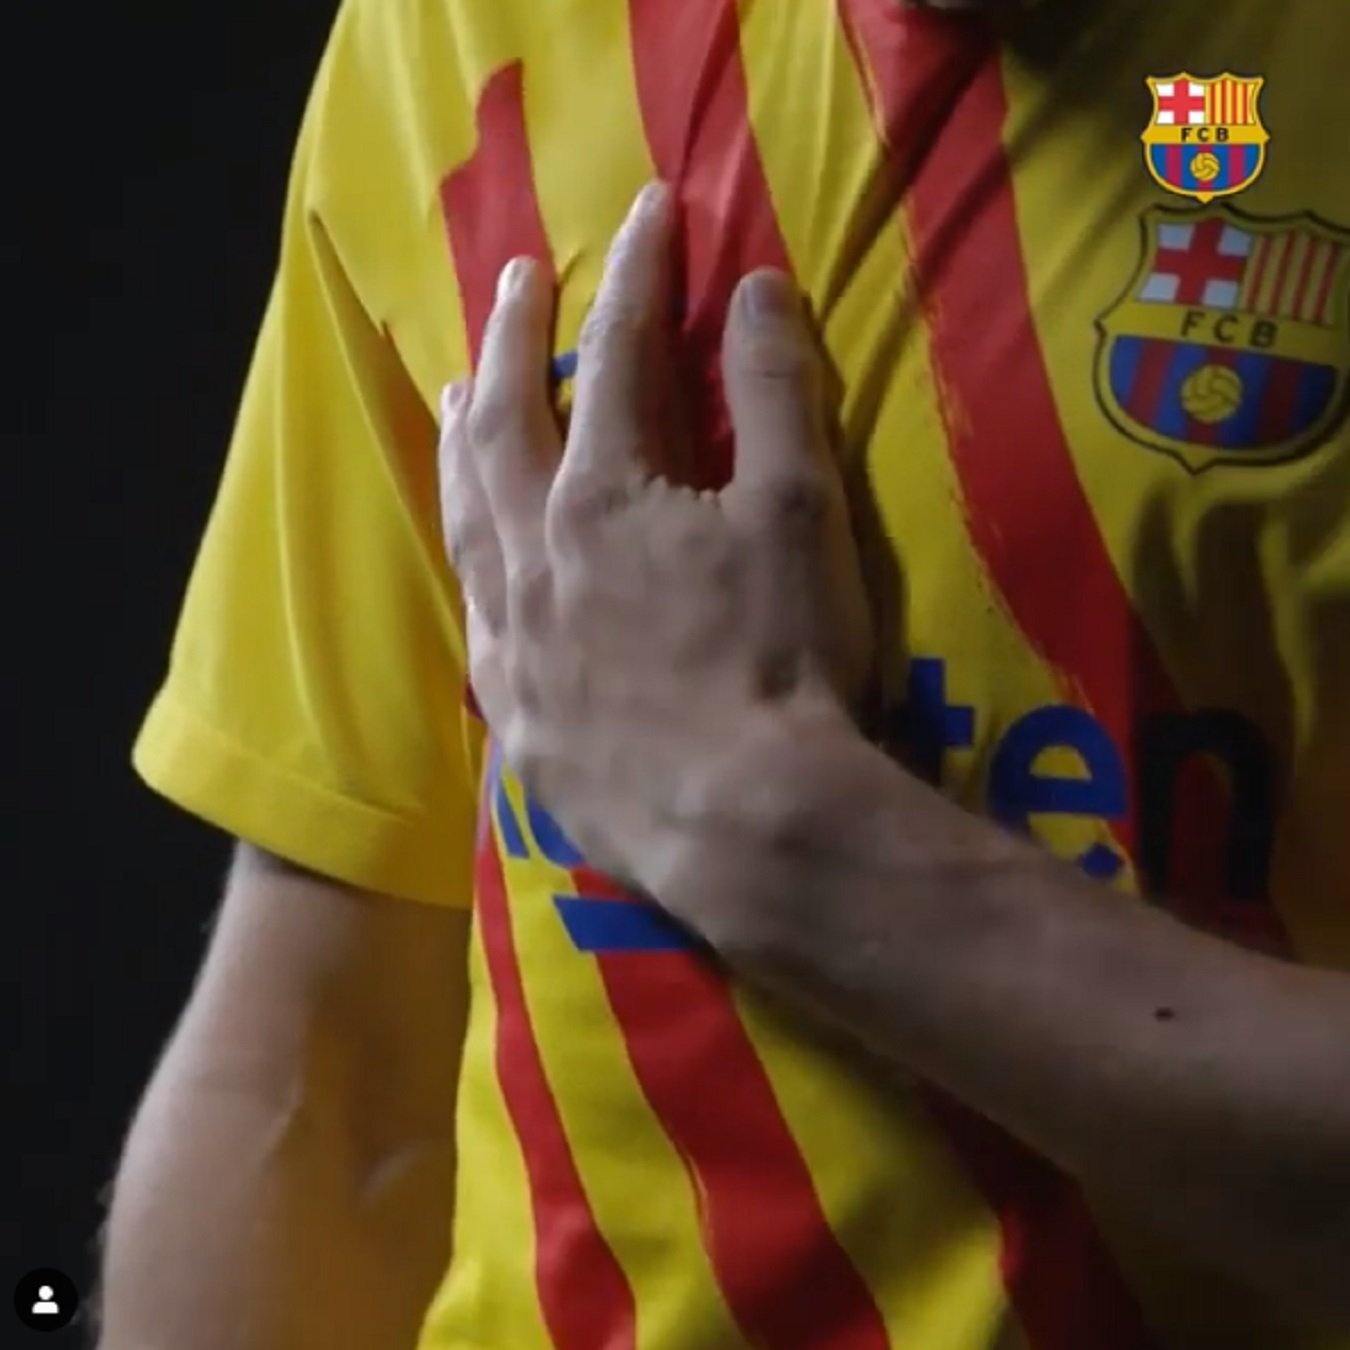 Un jugador del Barça fa seva la senyera i rep odi: "Payaso separatista"